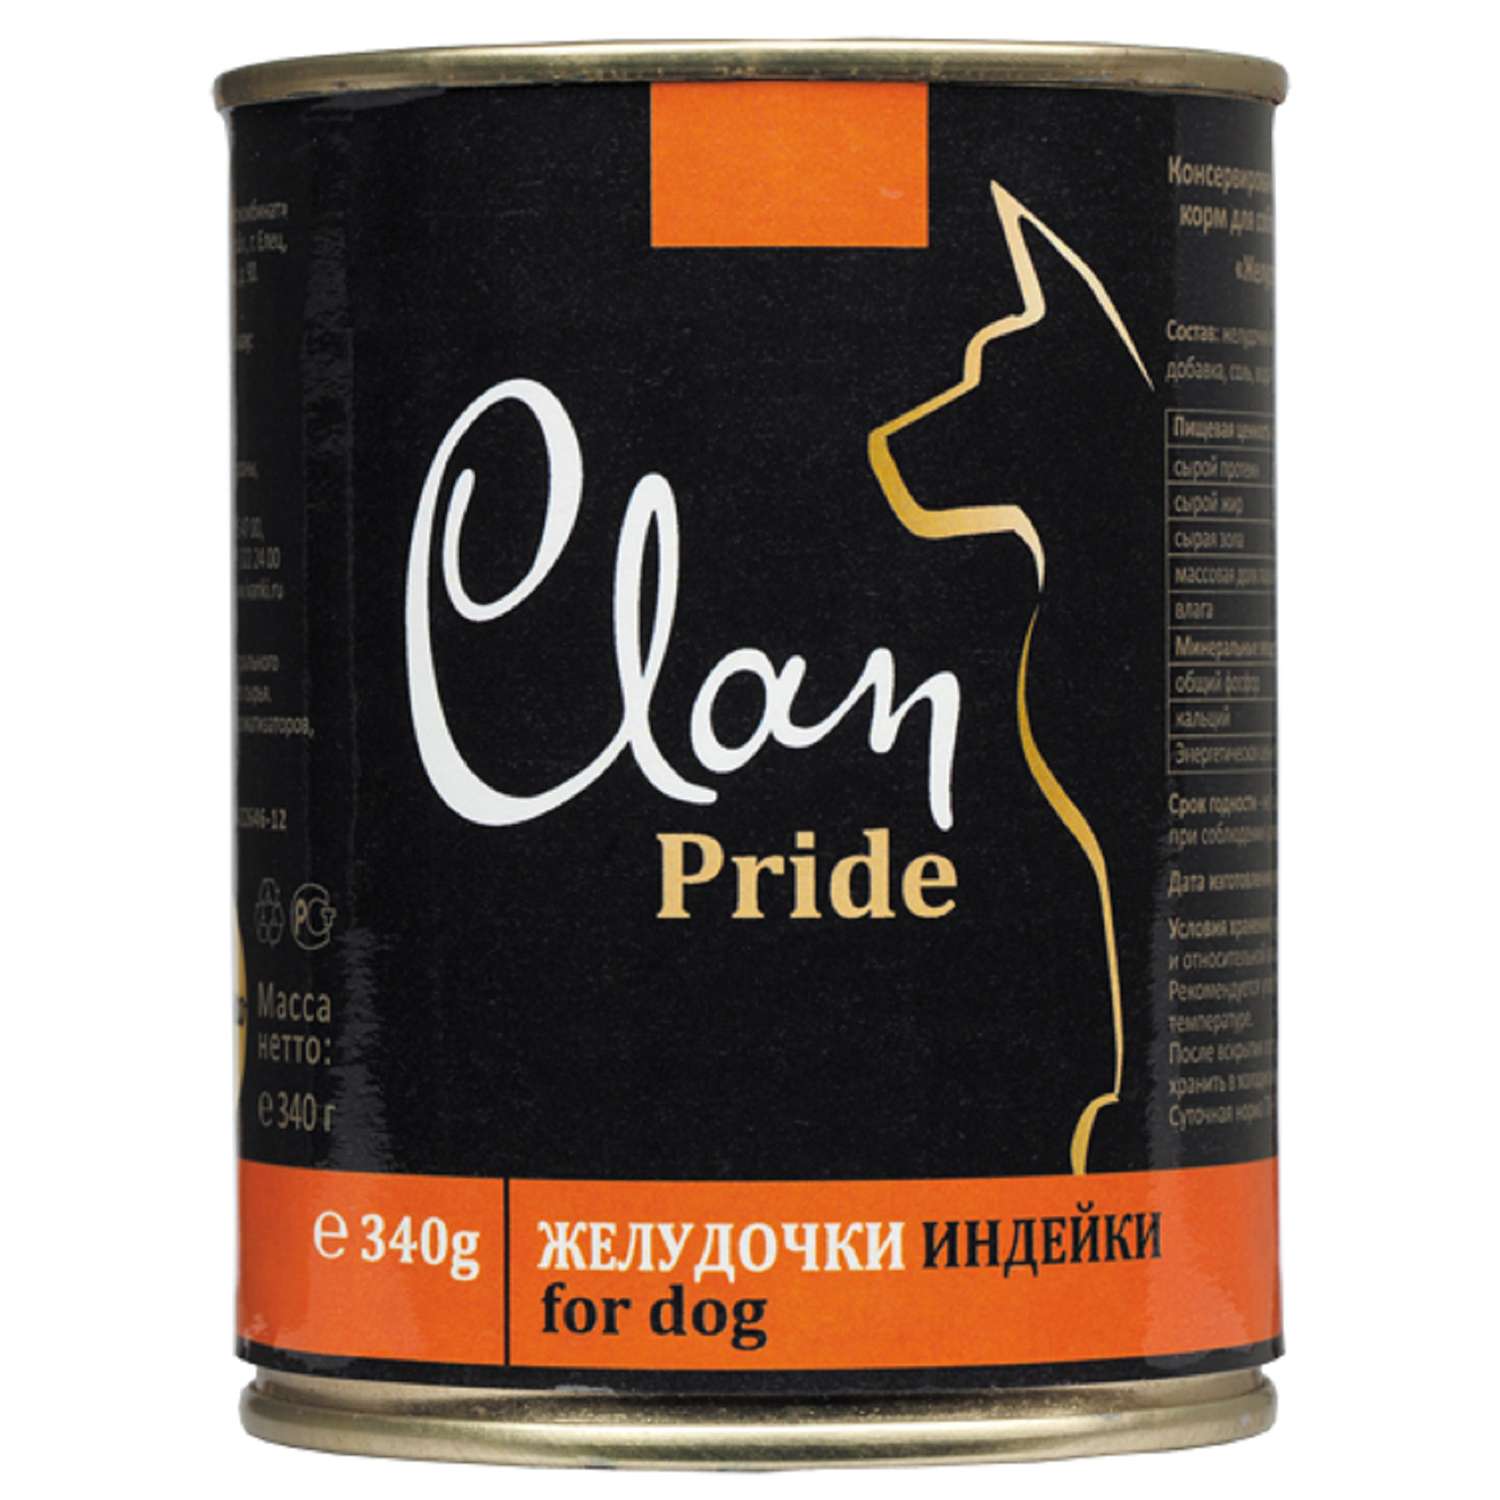 Корм для собак Clan Pride желудочки индейки консервированный 340г - фото 1